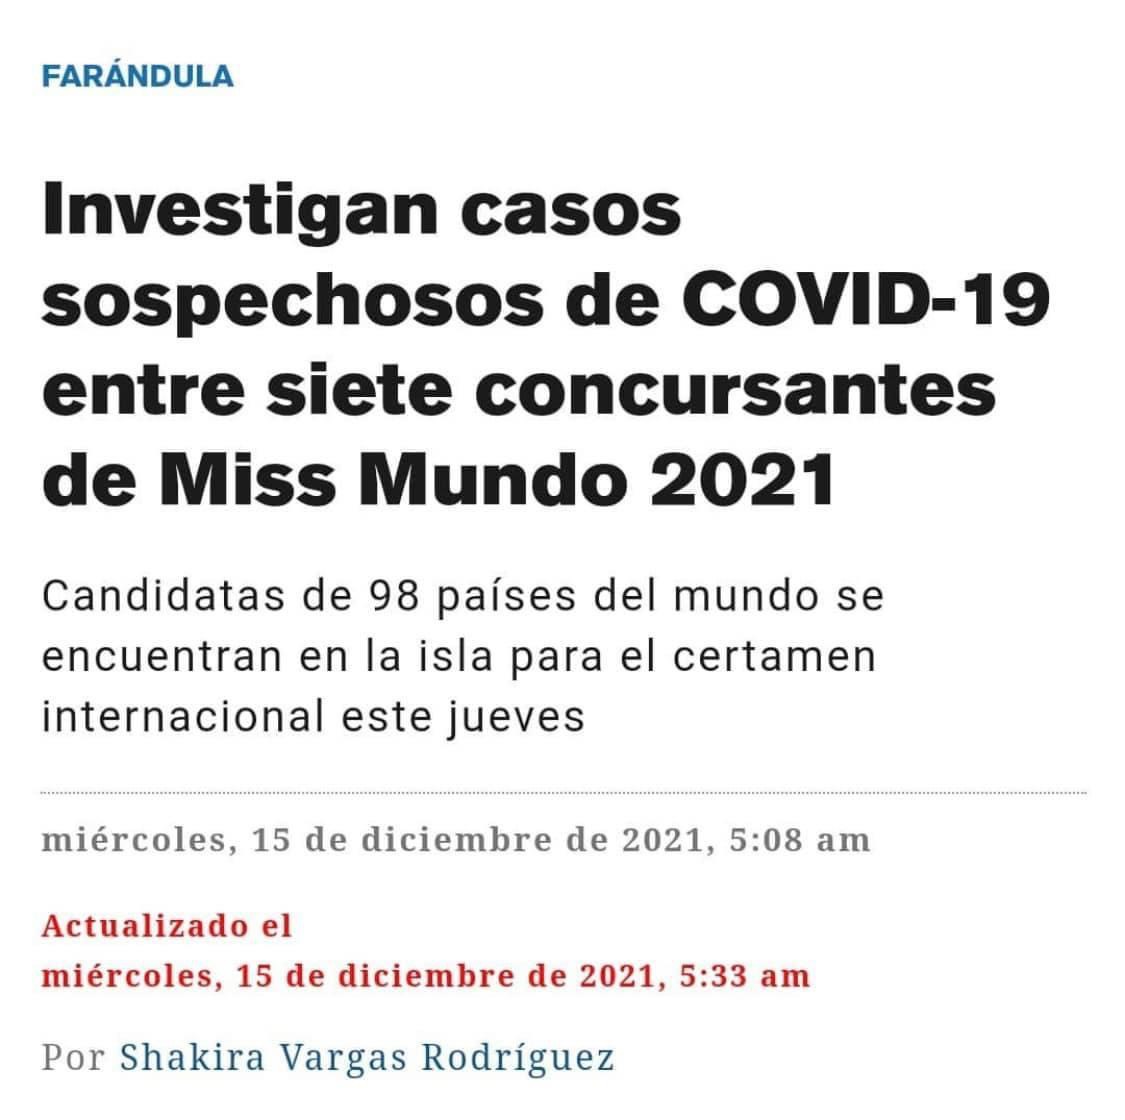 Truyền thông nước chủ nhà đồng loạt đăng tải thông tin về việc 7 thí sinh tại Miss World nhiễm Covid-19